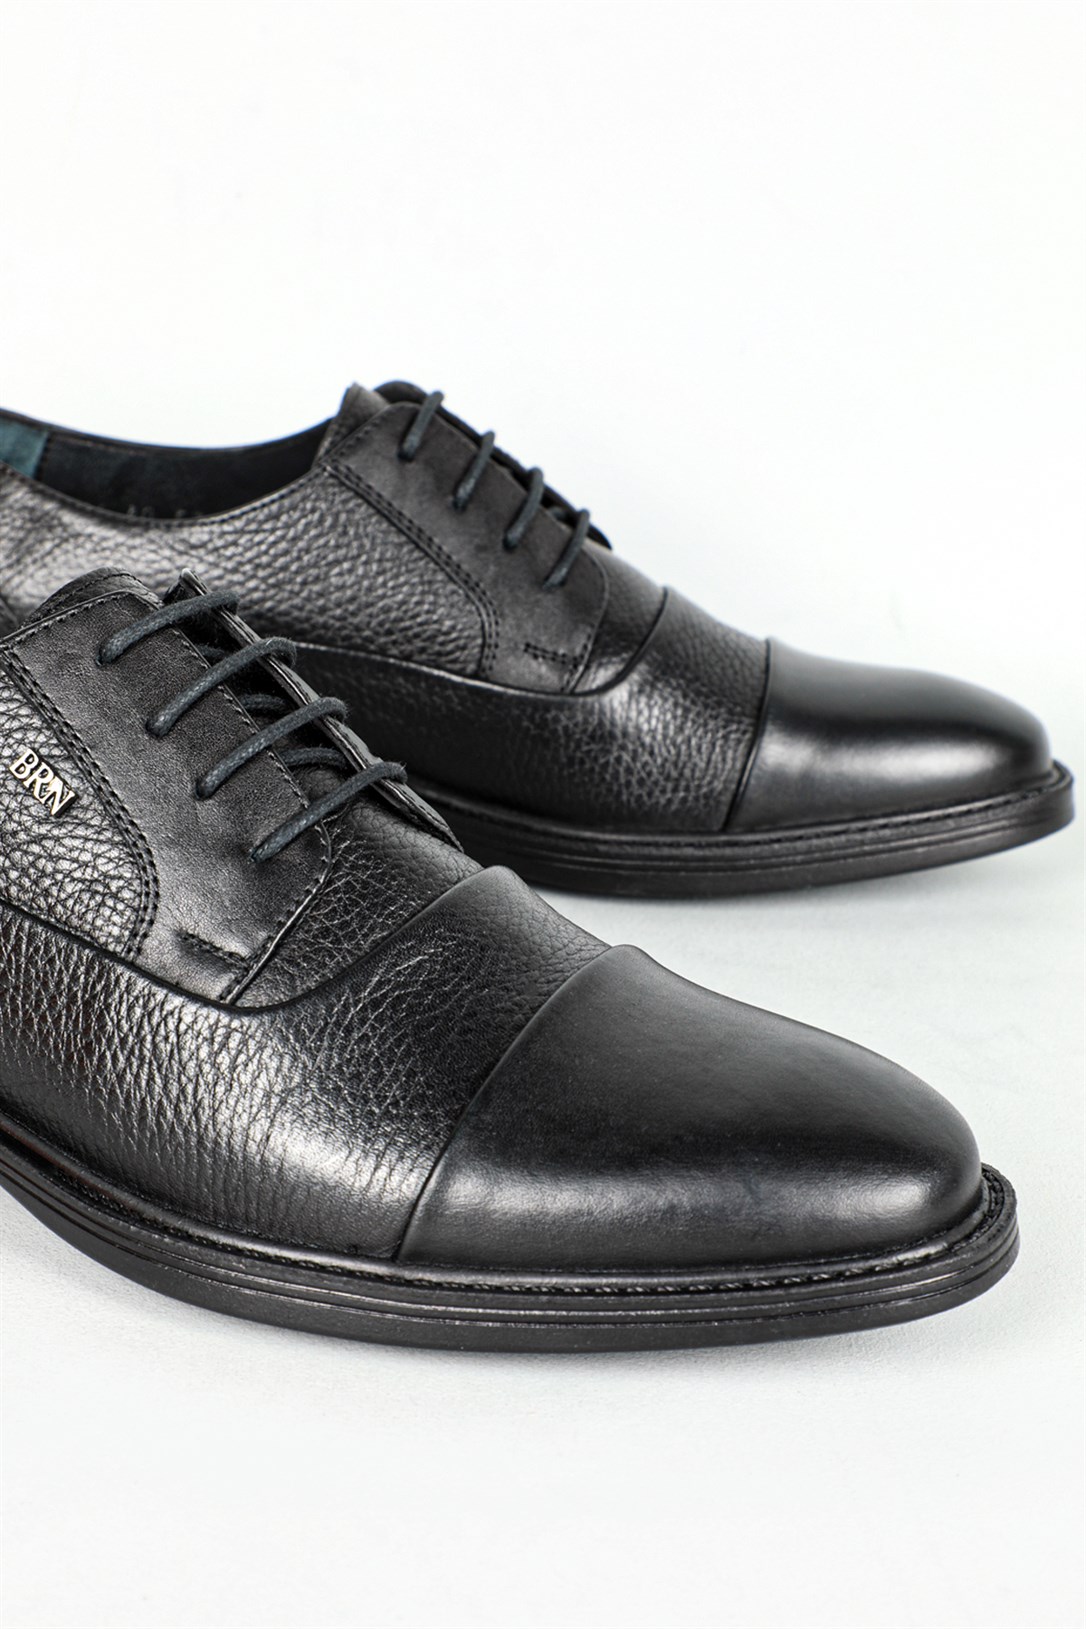 Berenni Klasik Deri Siyah Erkek Ayakkabı 574